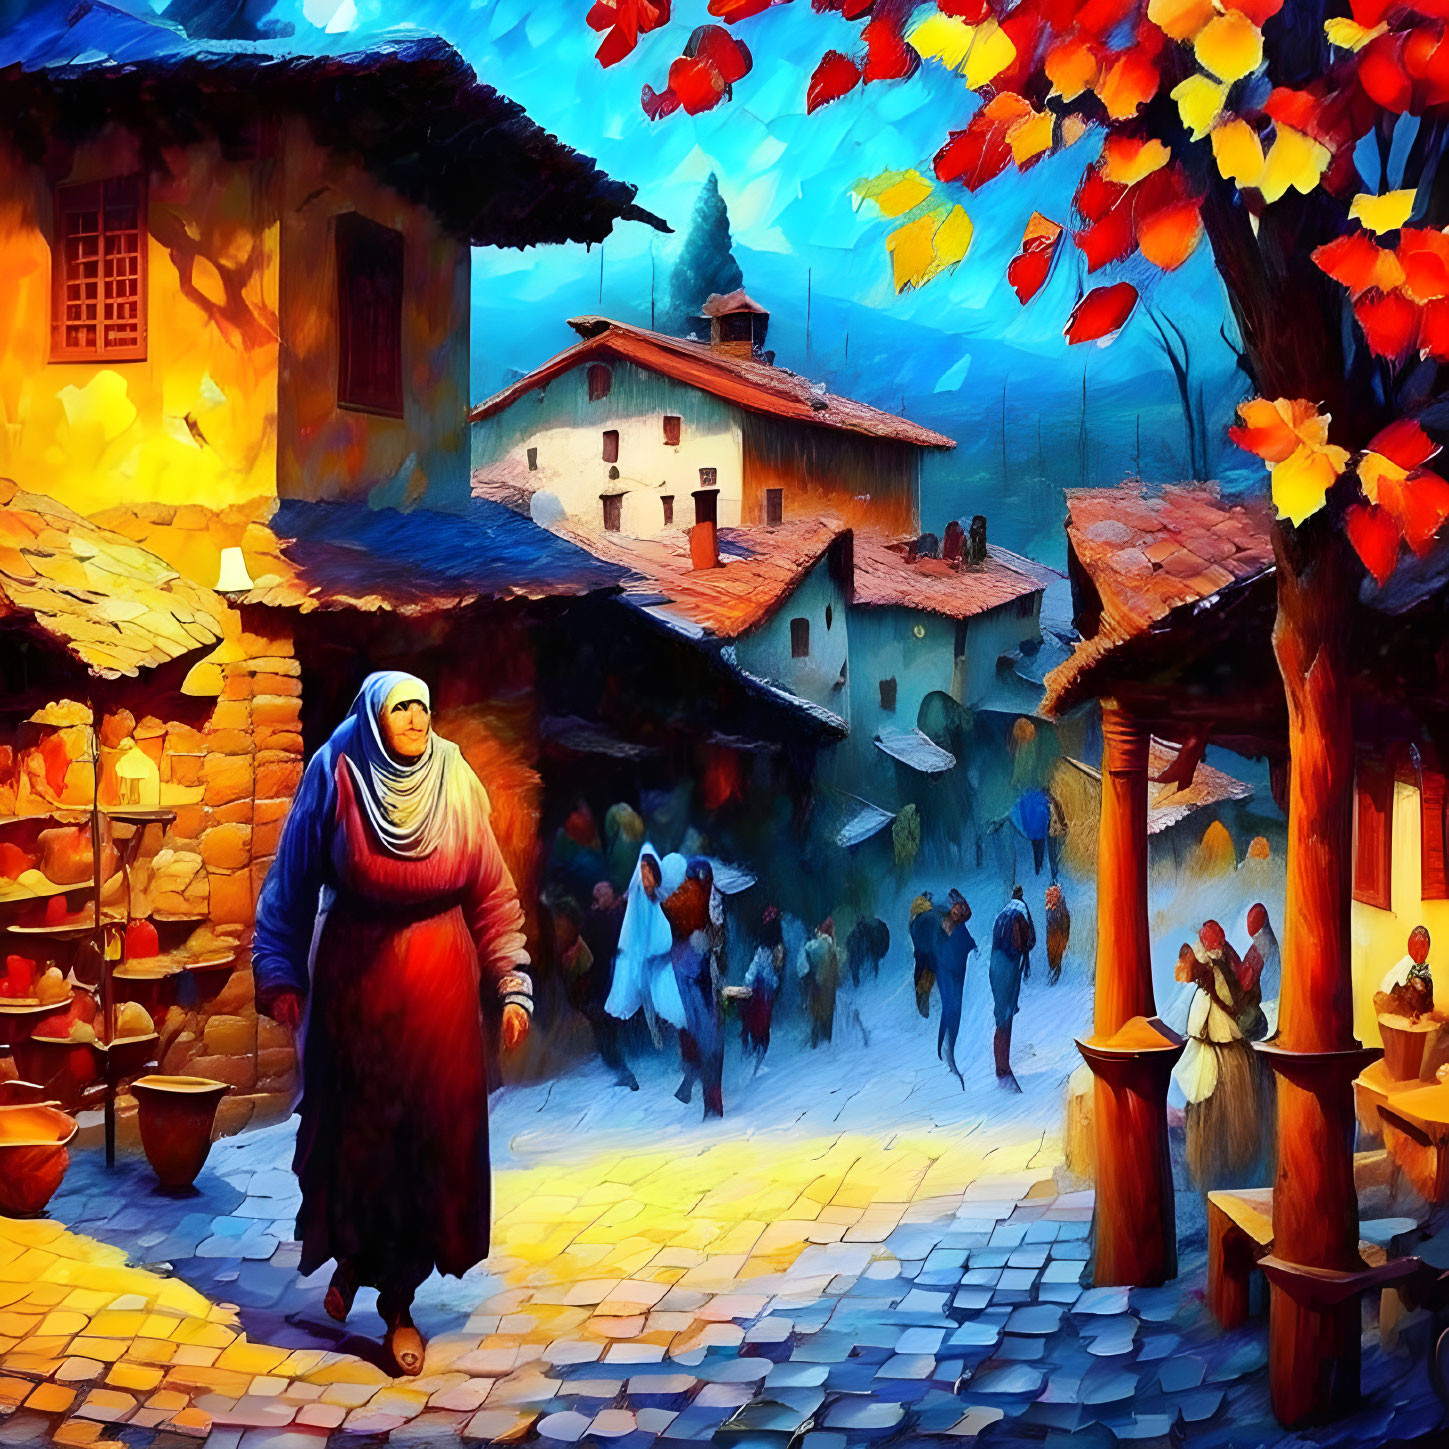 Cumalıkızık - A 700-year-old Ottoman Village